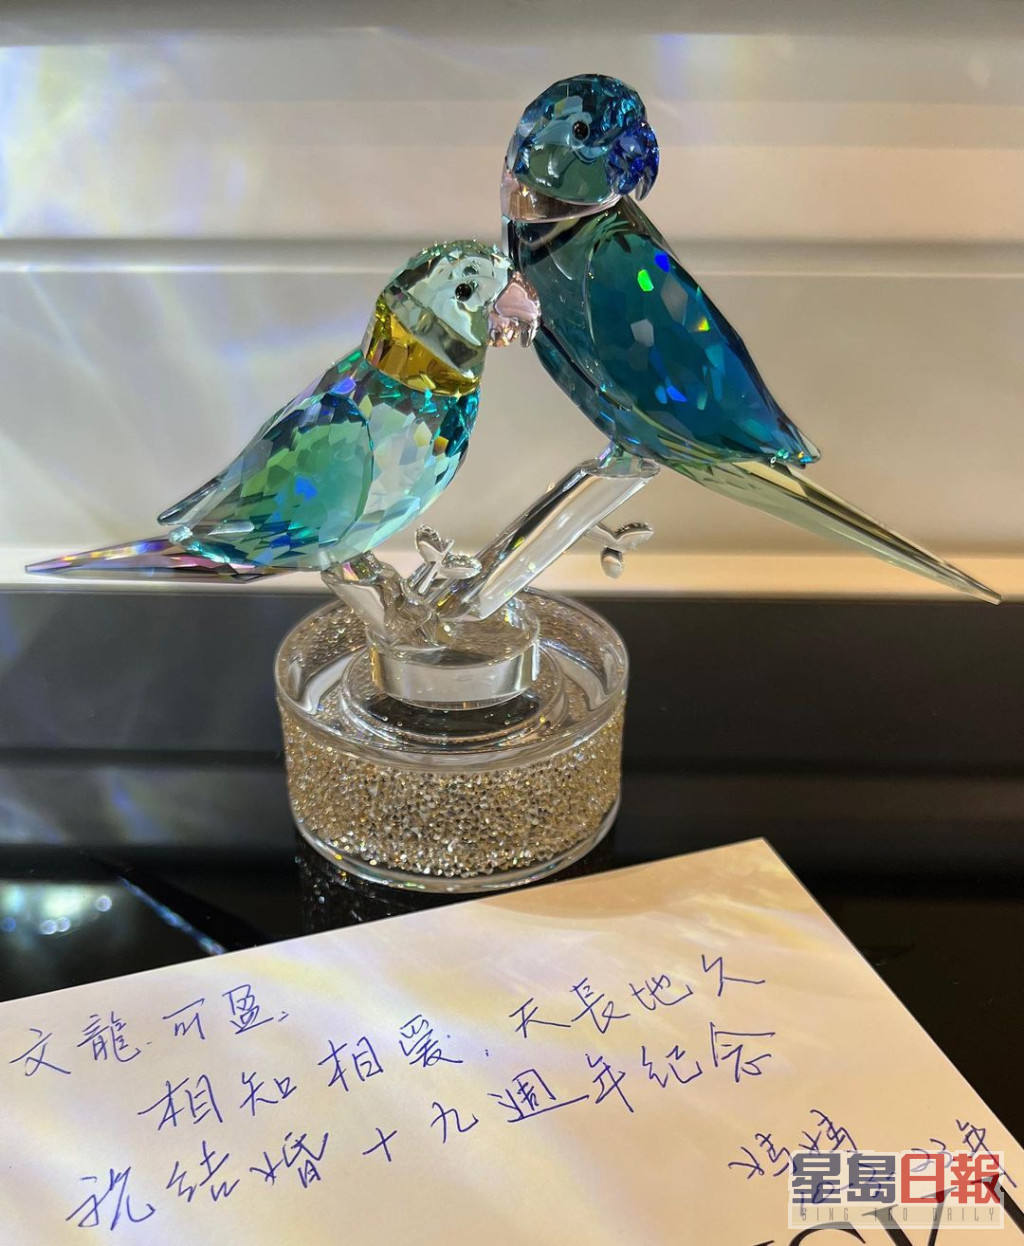 郭可盈除了分享媽媽所贈的水晶比翼鳥，亦分享由媽媽親手寫的祝賀語：「相知相愛、天長地久，祝結婚19周年紀念。」